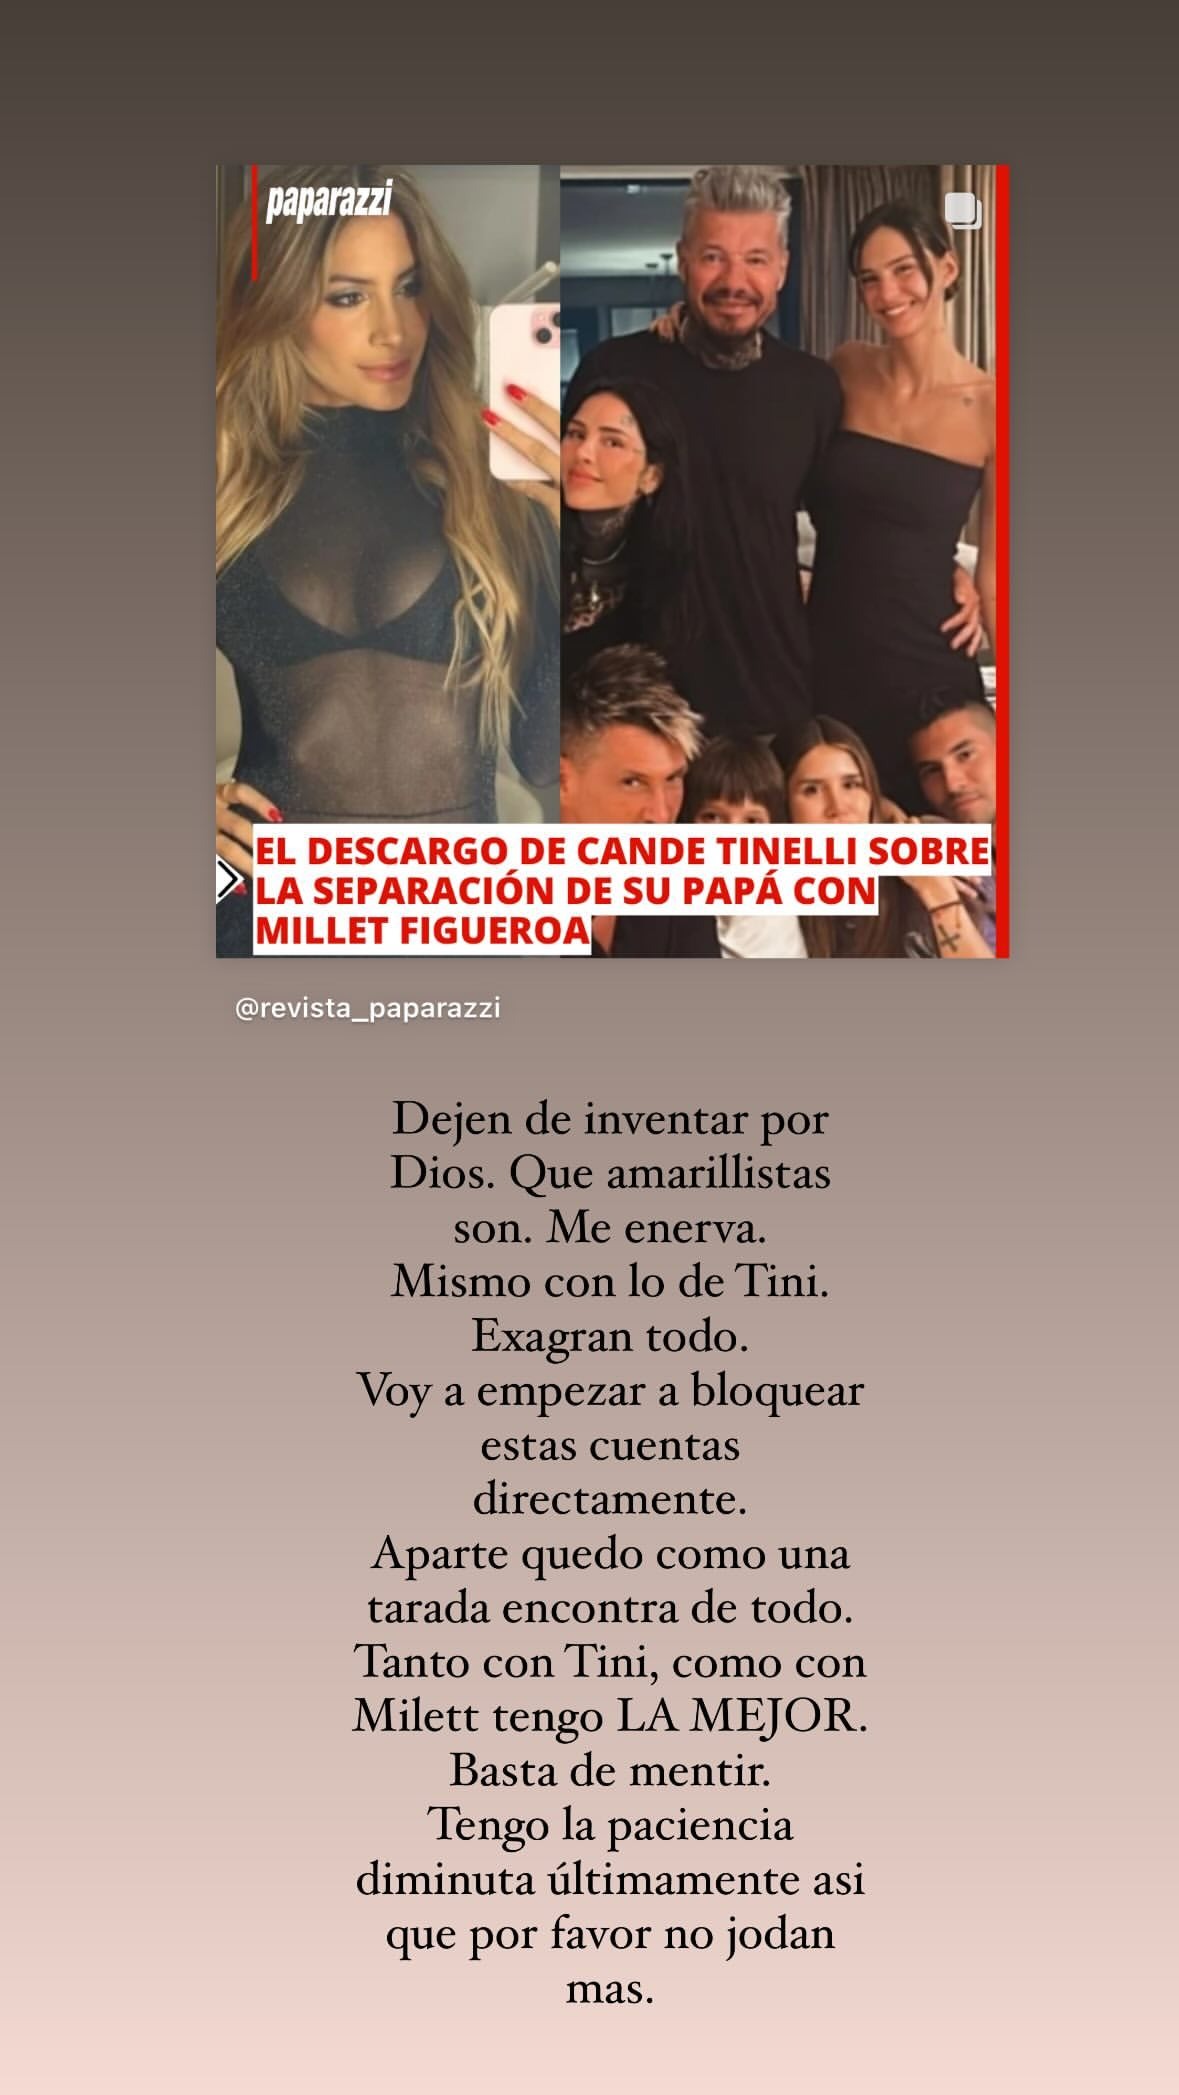 Candelaria Tinelli desmintió tener mala relación con Milett Figueroa / Instagram